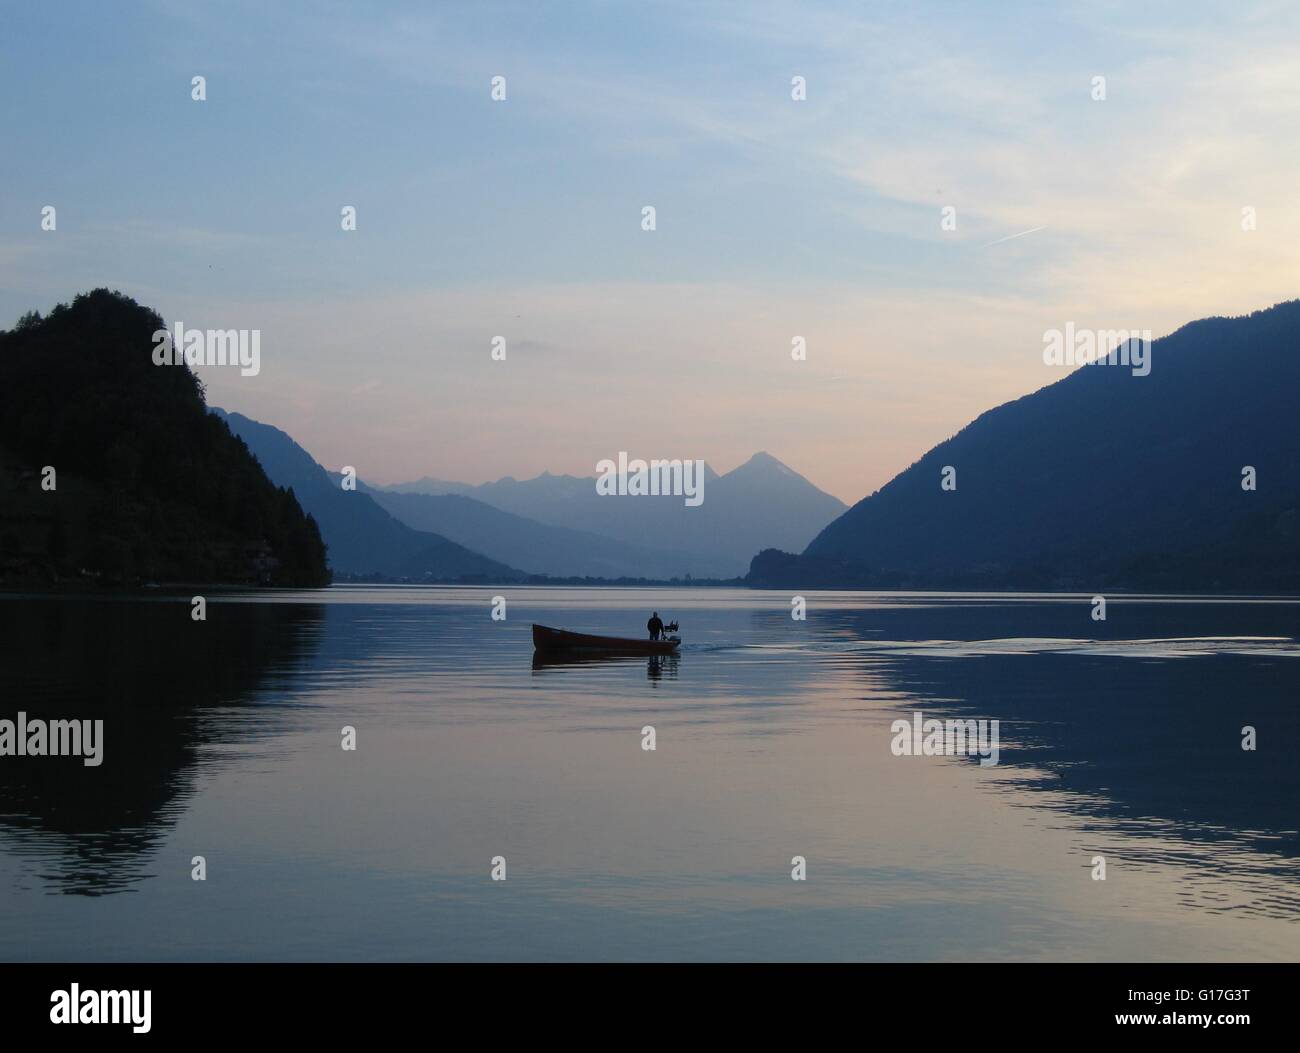 Einsamen Fischer im kleinen Boot am Brienzersee, Schweiz bei Sonnenuntergang Stockfoto